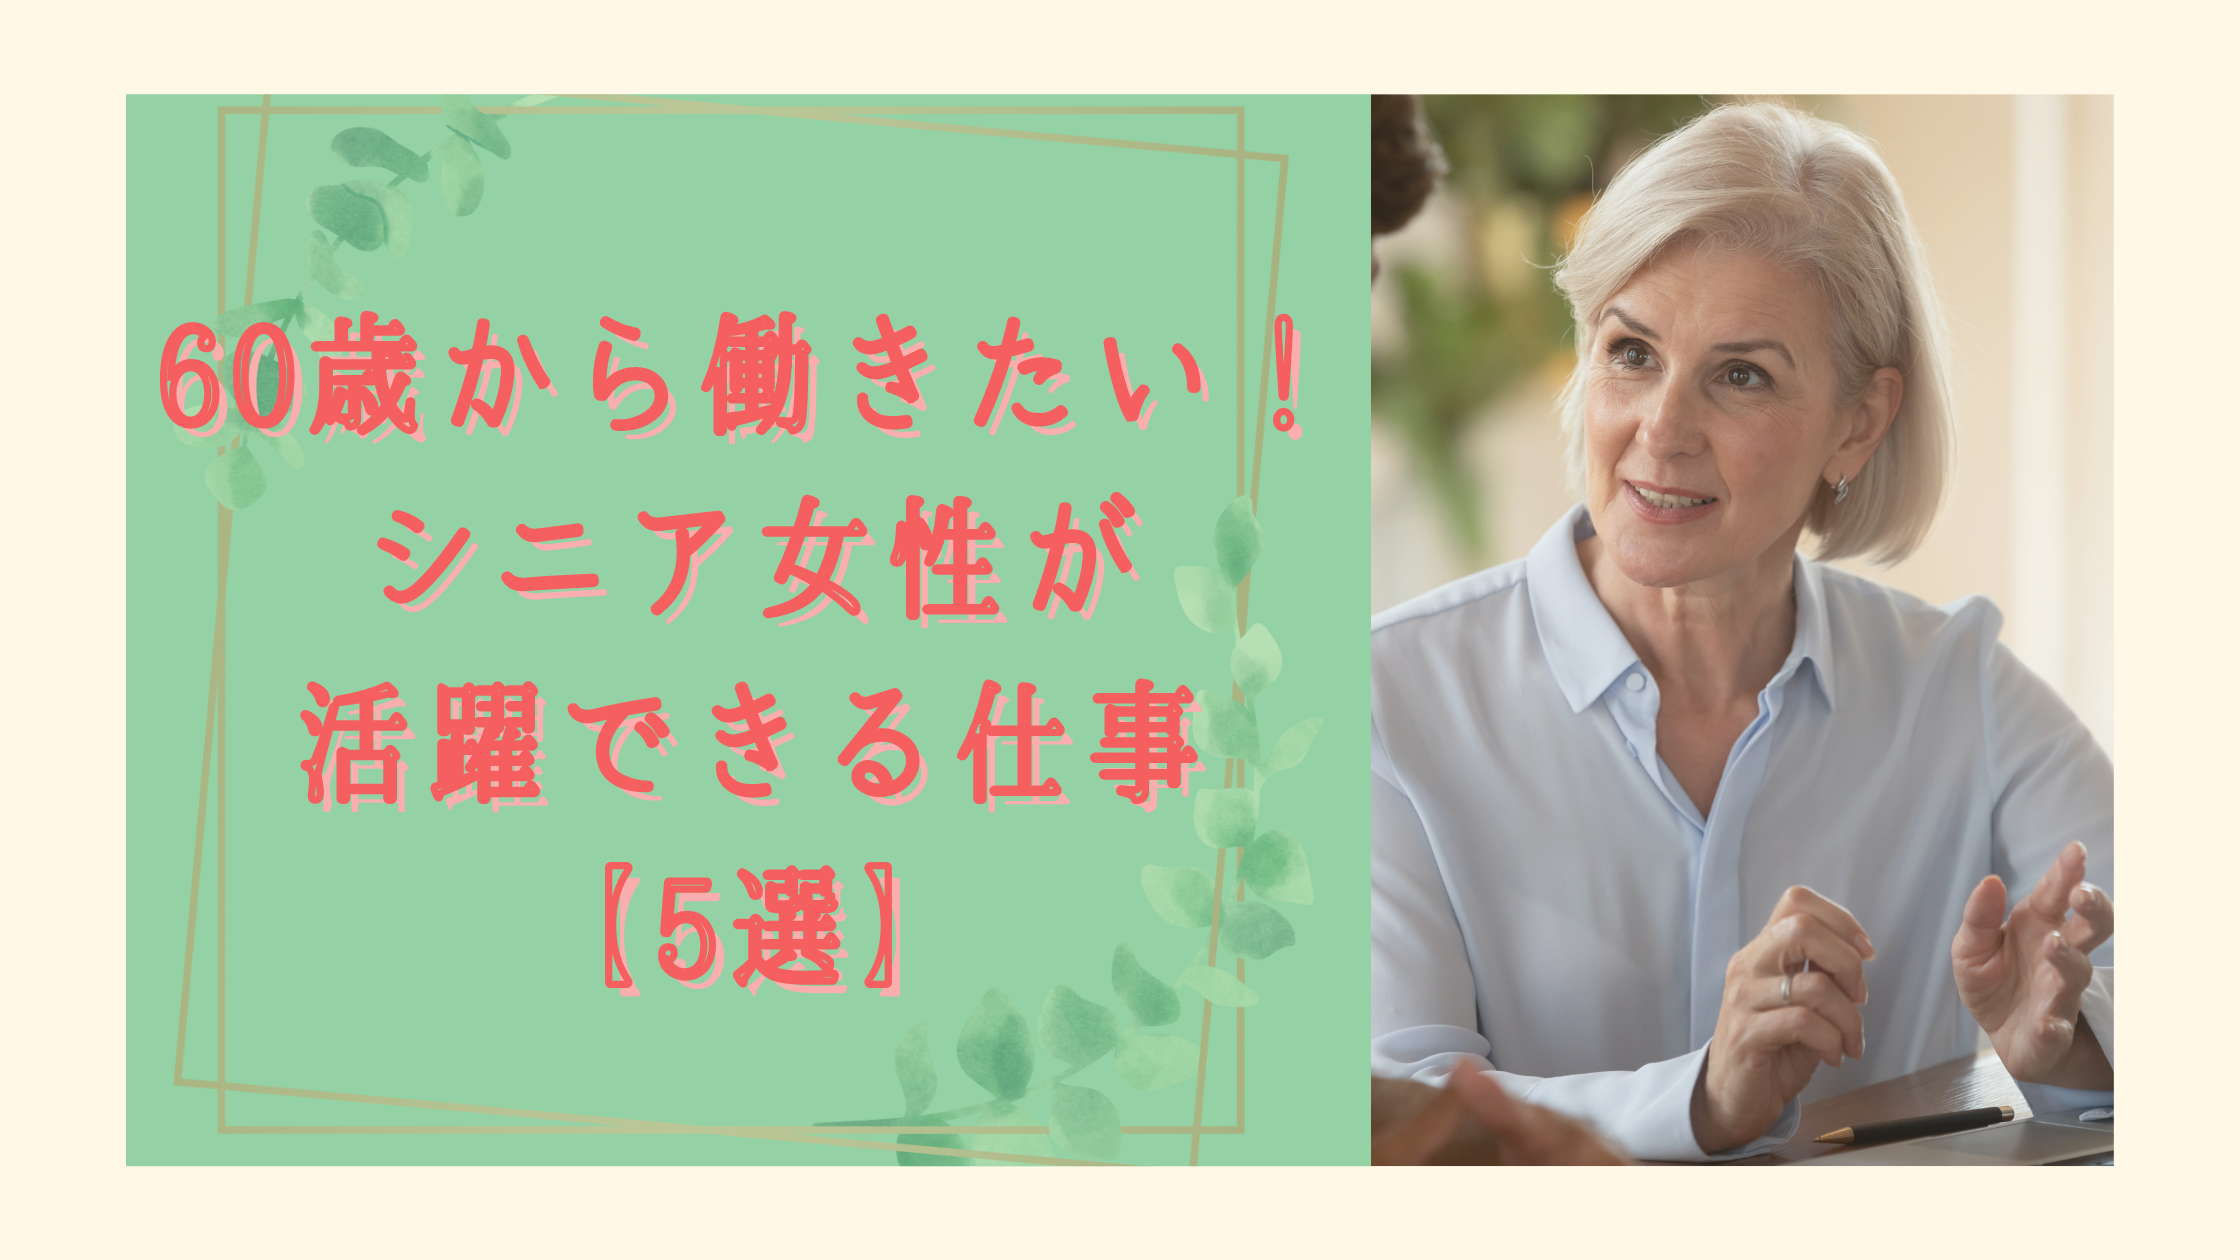 60歳から働きたい シニア女性が活躍できる仕事 5選 仕事の探し方も合わせて紹介 日本語教師キャリア マガジン 旧称 日本語情報バンク